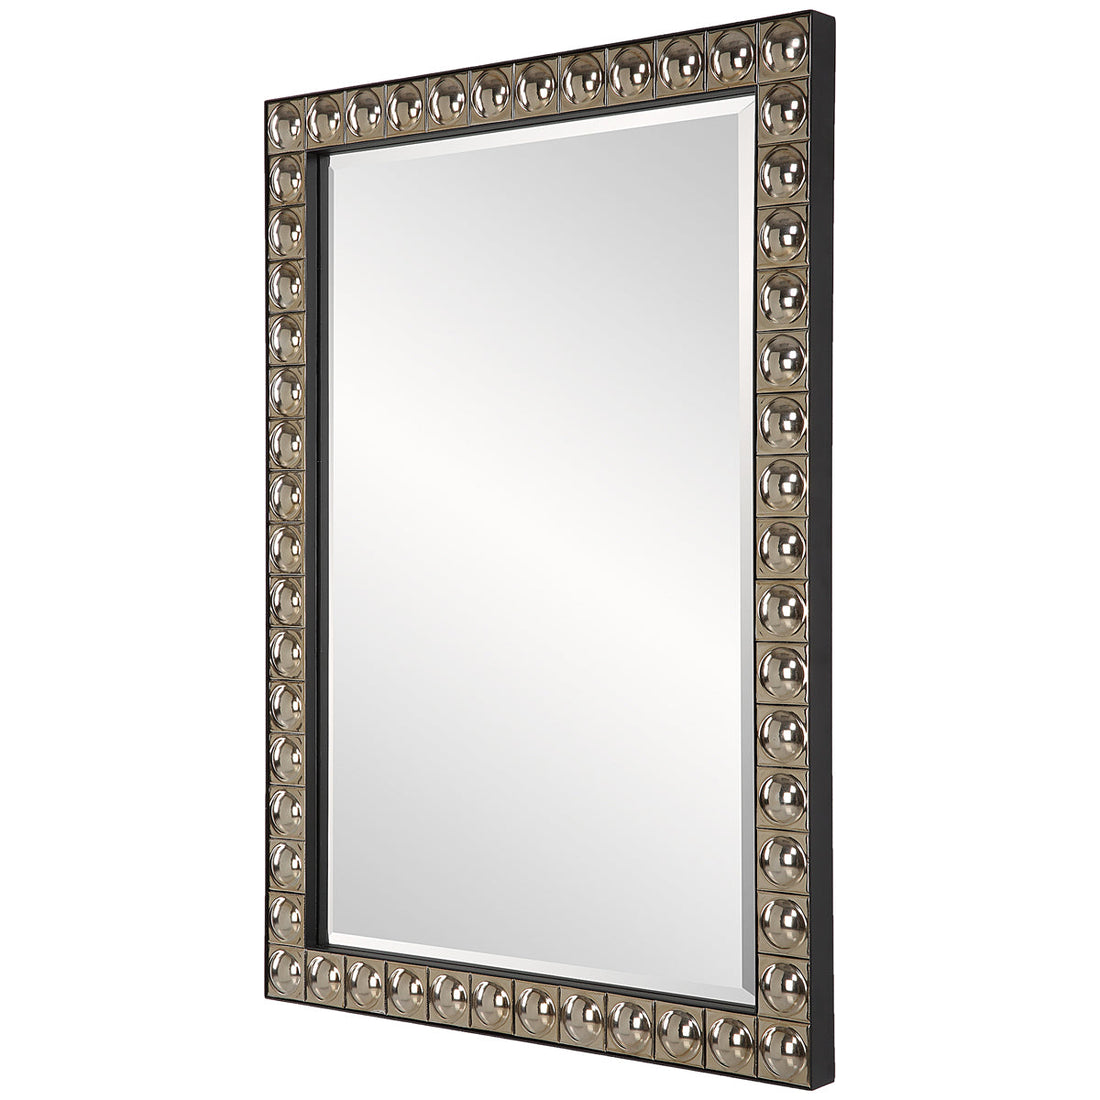 Uttermost Silvio Tiled Vanity Mirror